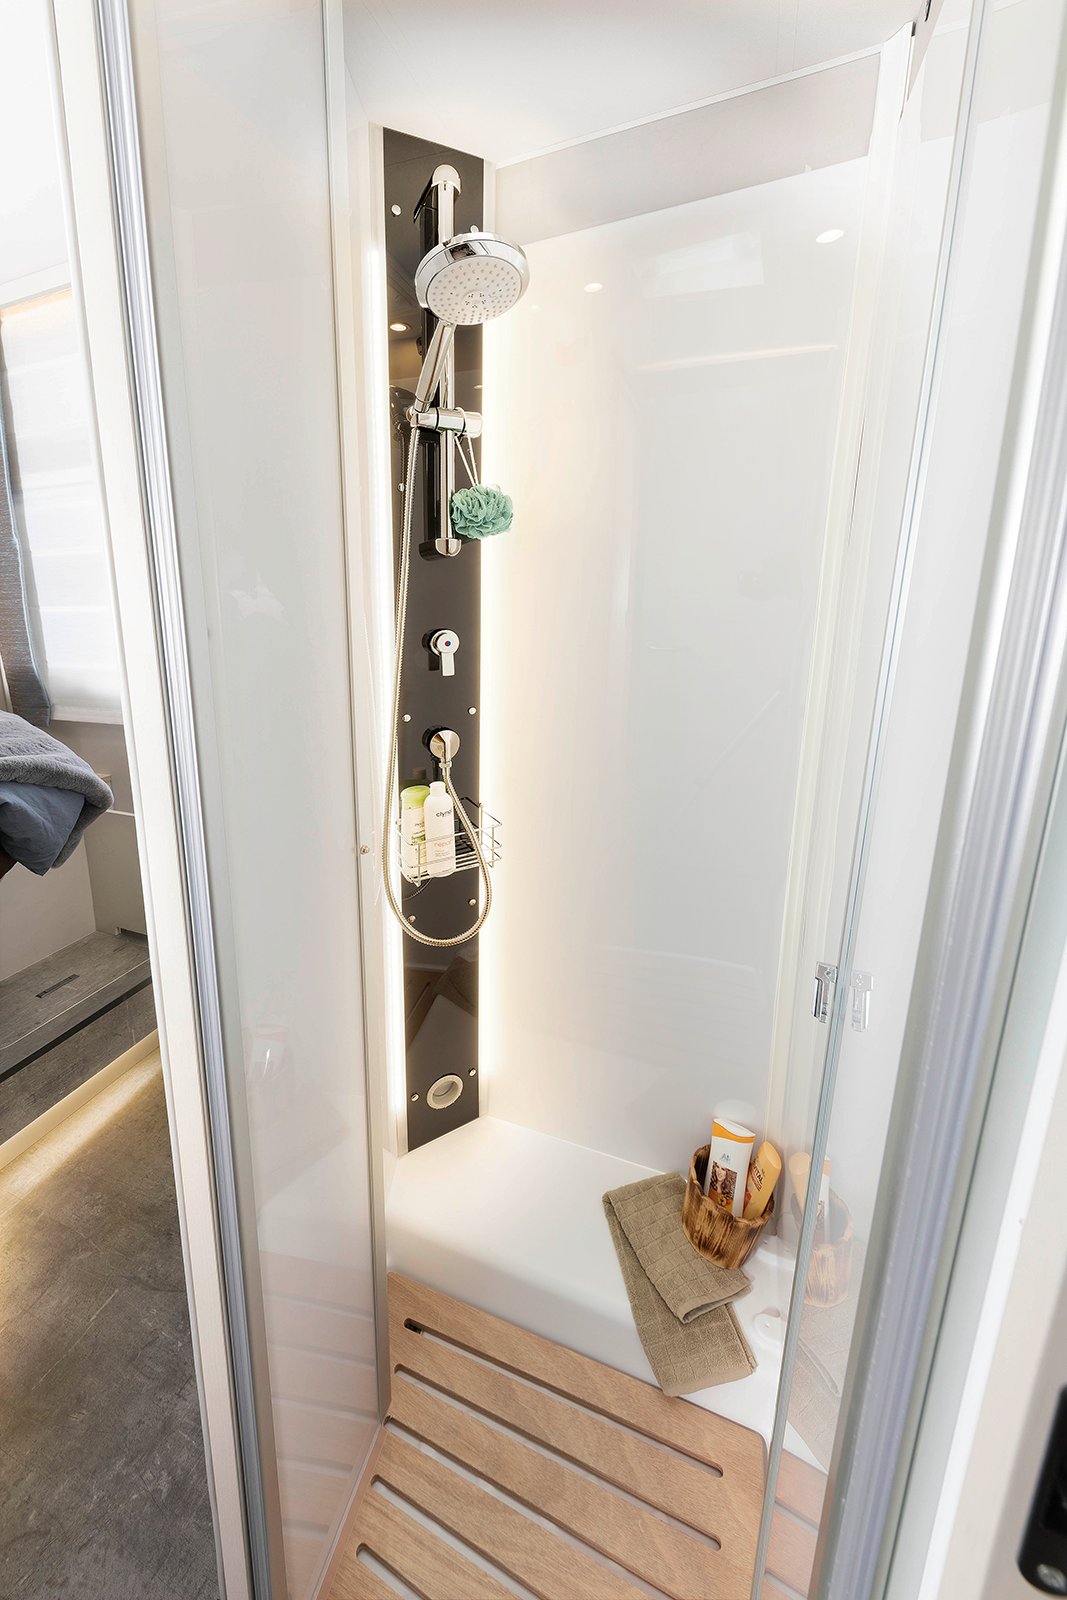 Grande cabina doccia dal design moderno e illuminazione indiretta creano un ambiente di benessere perfetto